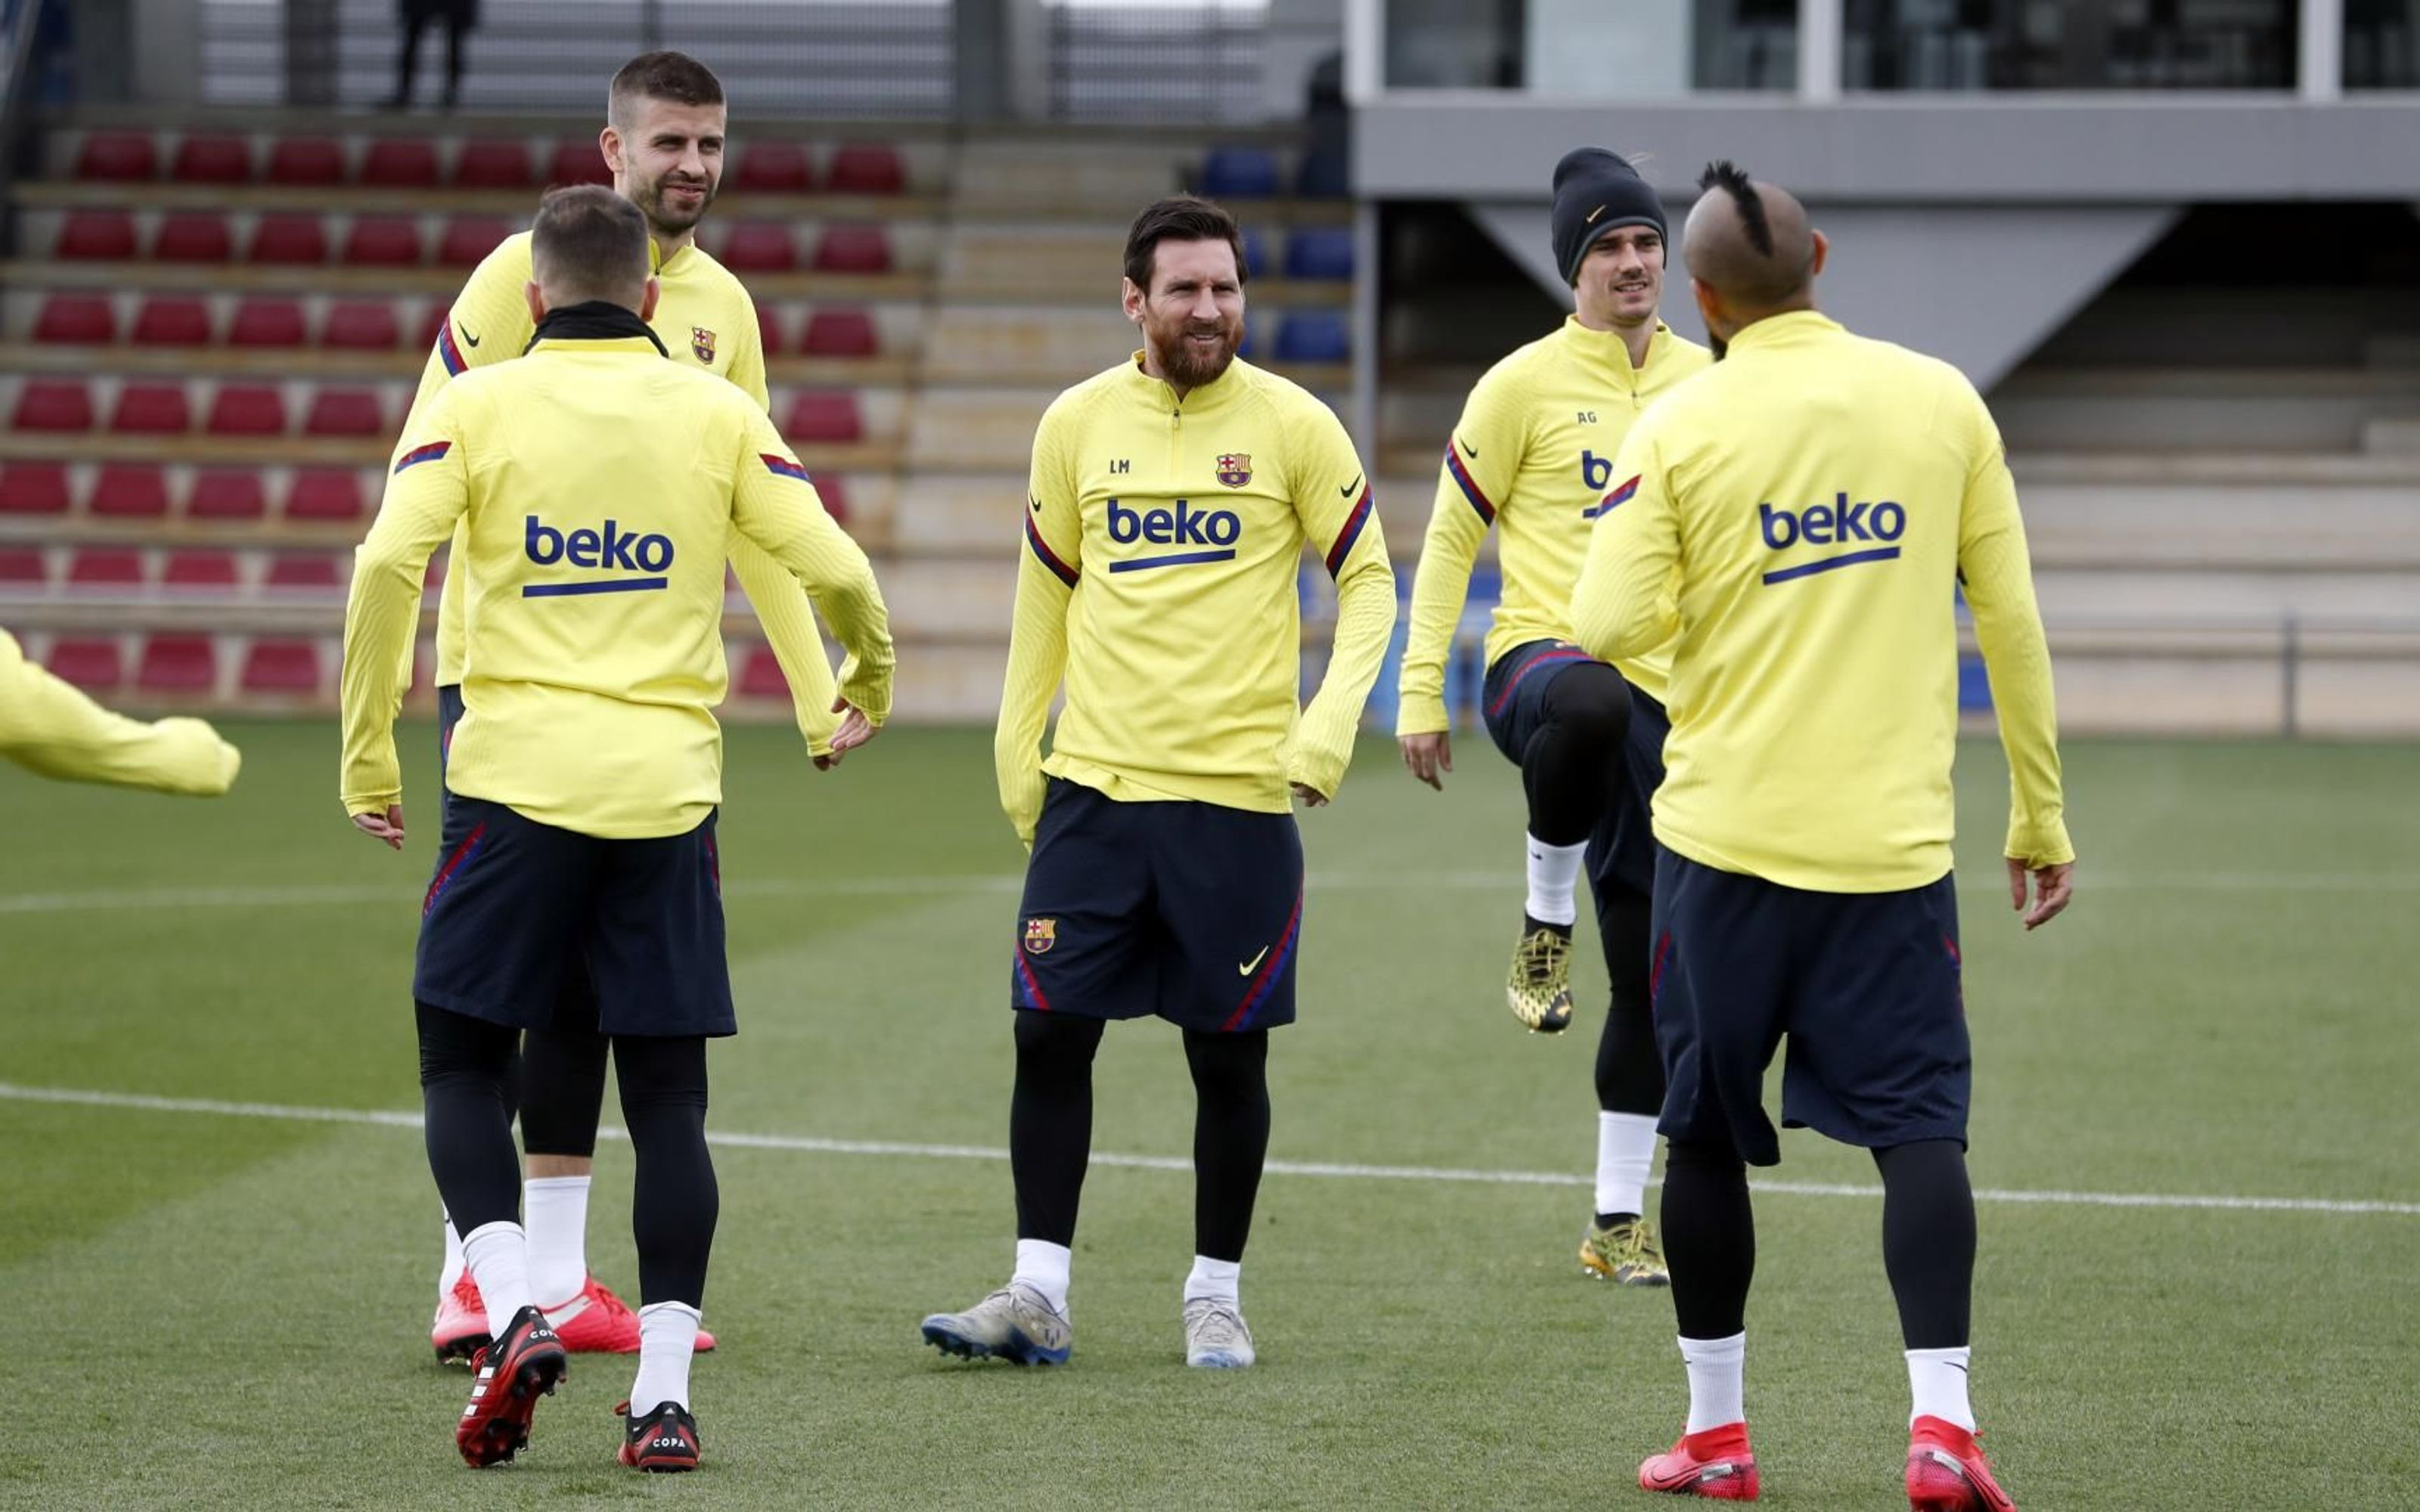 Alba, Piqué, Messi, Vidal y Griezmann en el entrenamiento del Barça / FC Barcelona